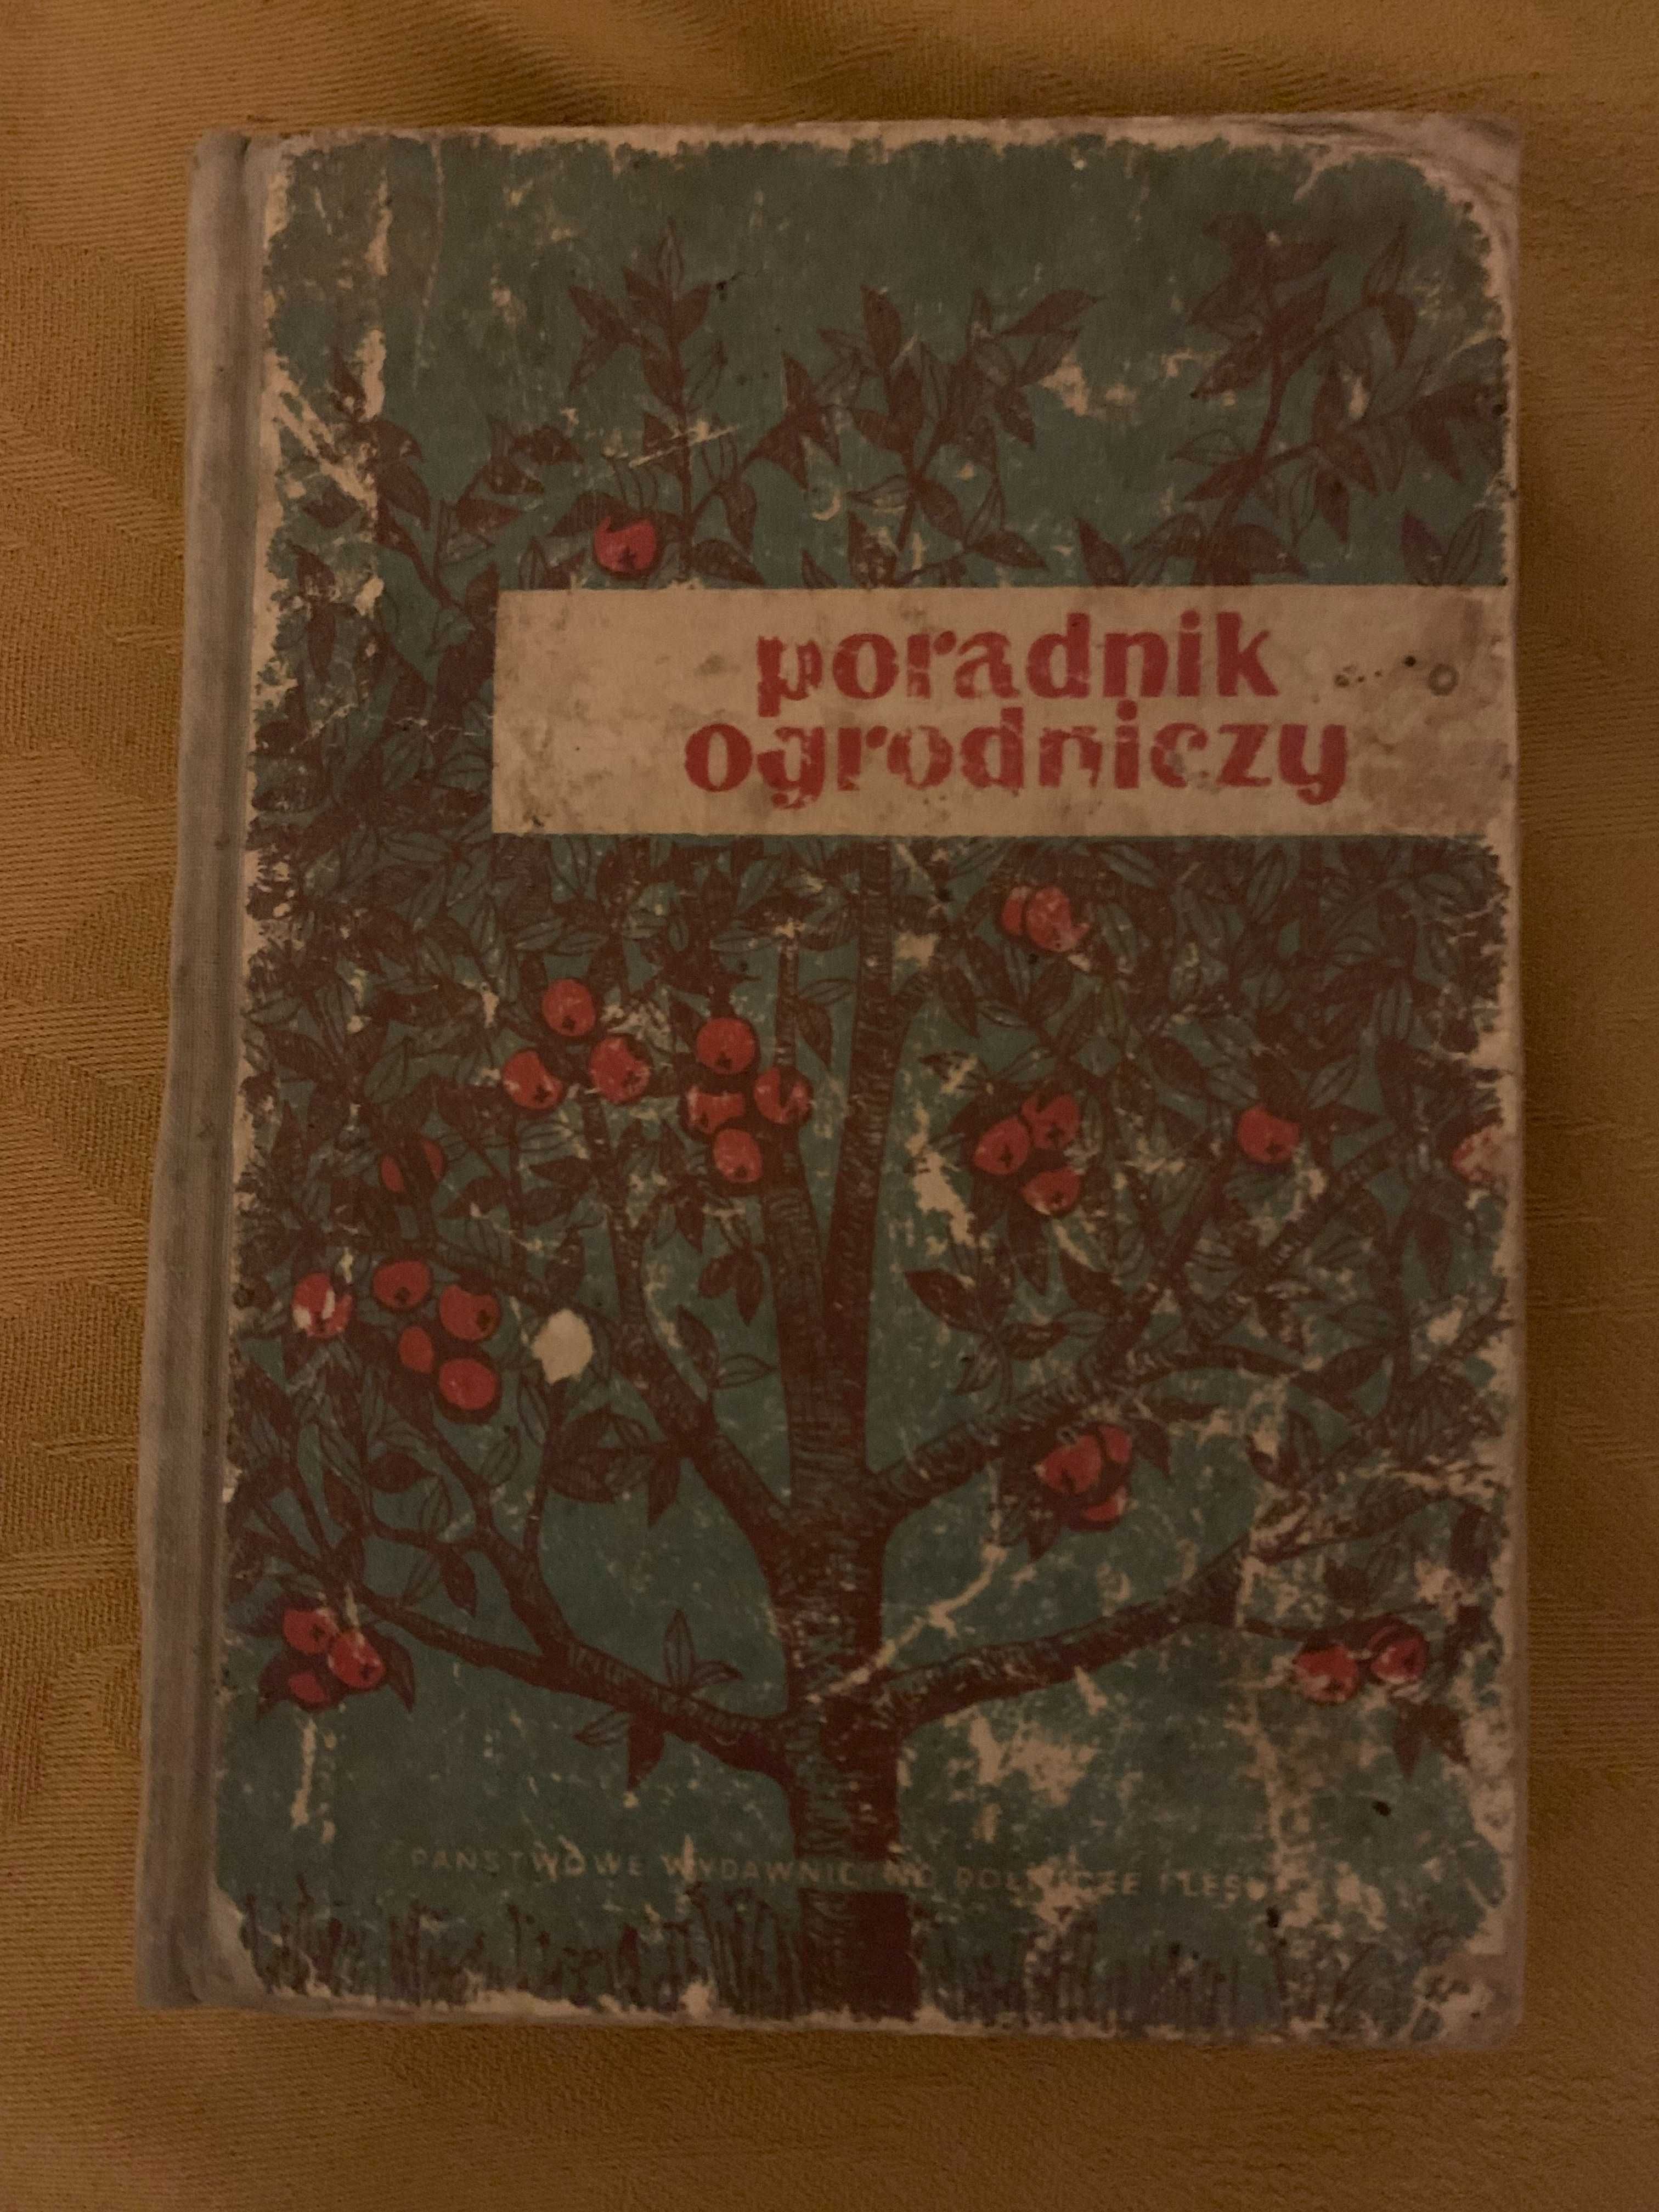 Poradnik ogrodniczy praca zbiorowa 1955 r. vintage PRL